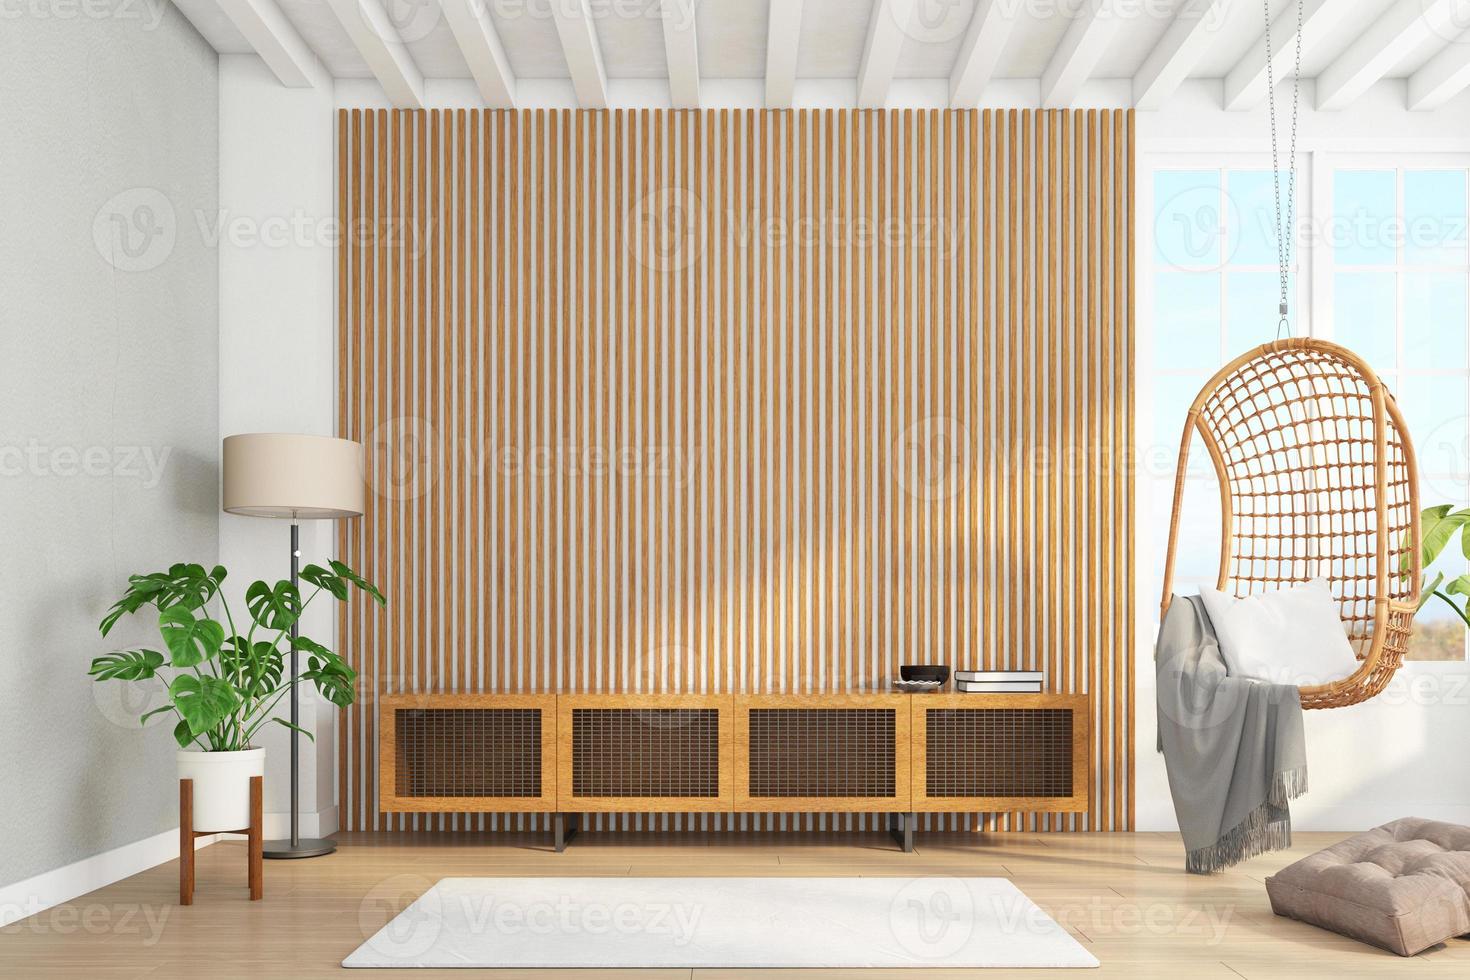 kast hout voor tv op de houten latten muur in woonkamer met hangstoel, minimalistisch modern. 3D-rendering foto